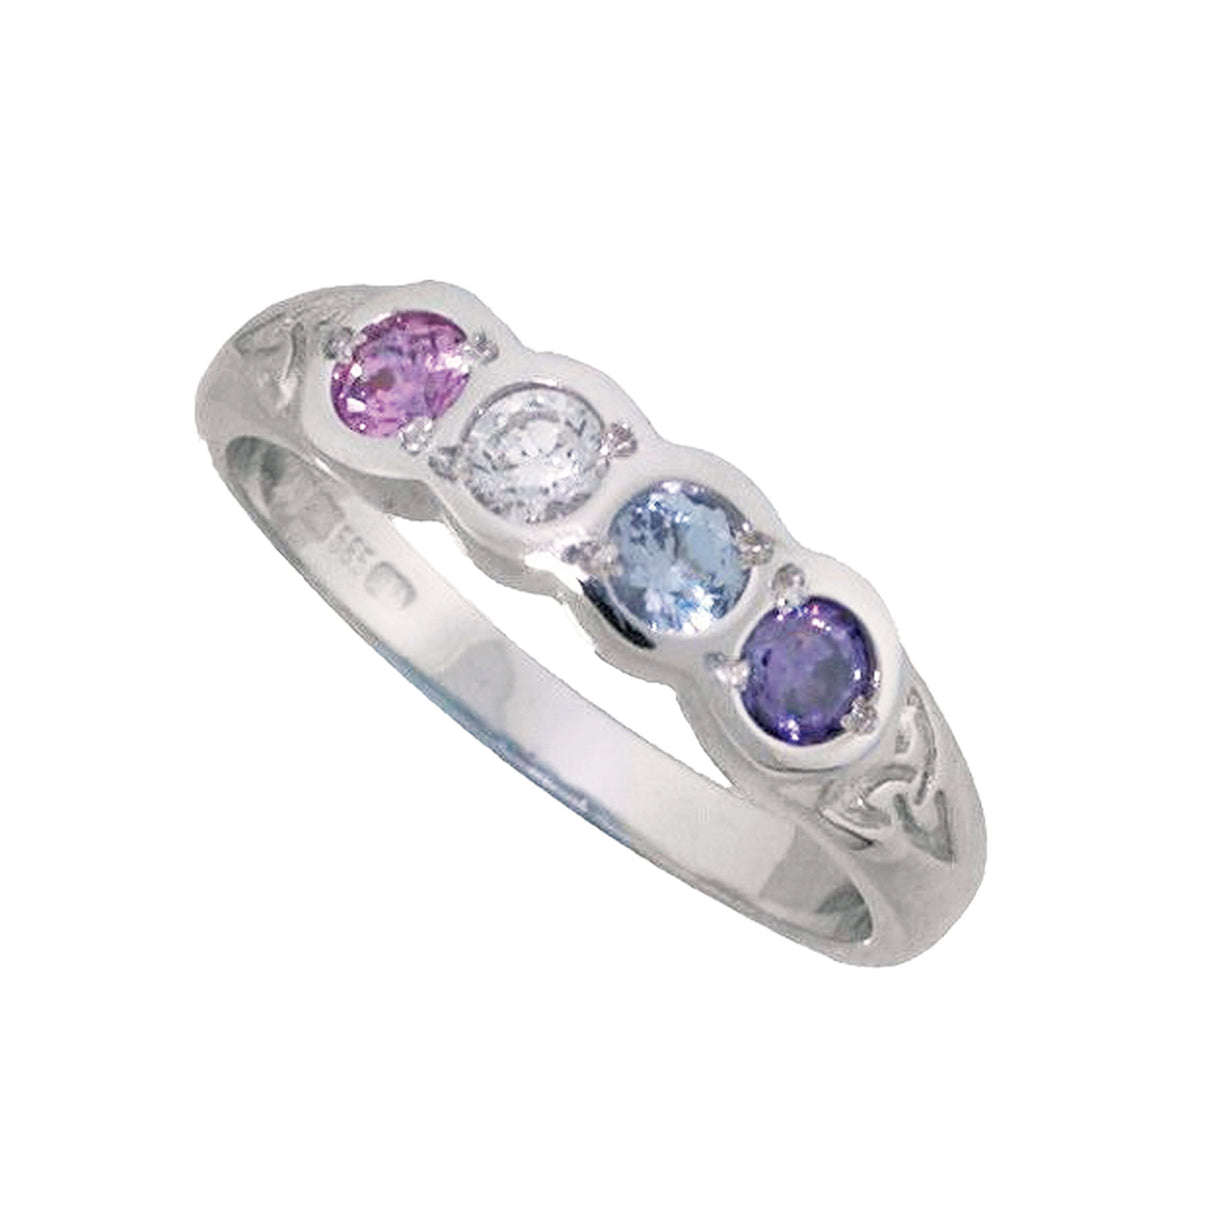 6 Stone Family Birthstone Ring - Creative Irish Gifts